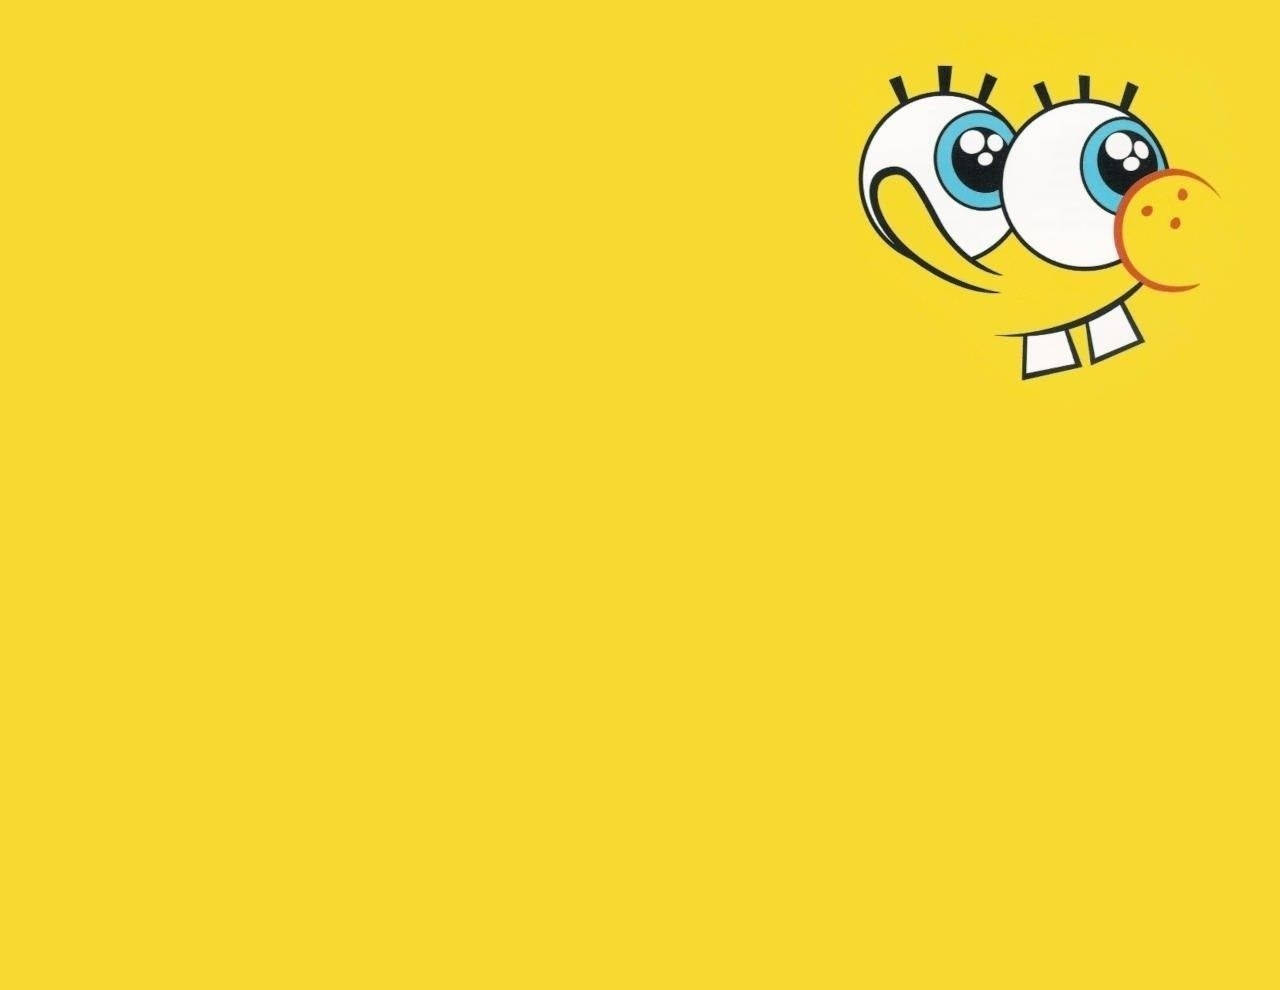 Spongebob Squarepants Wallpaper, Yellow Background, Cartoon, Person, Person, Person, Person, Person, Person, Person, Person, Person, Person, Background